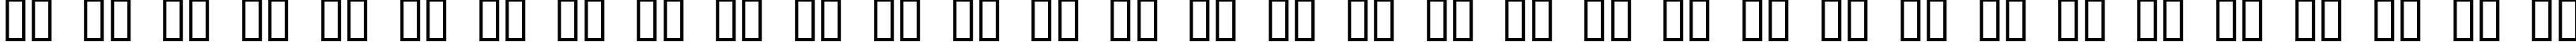 Пример написания русского алфавита шрифтом URALthin